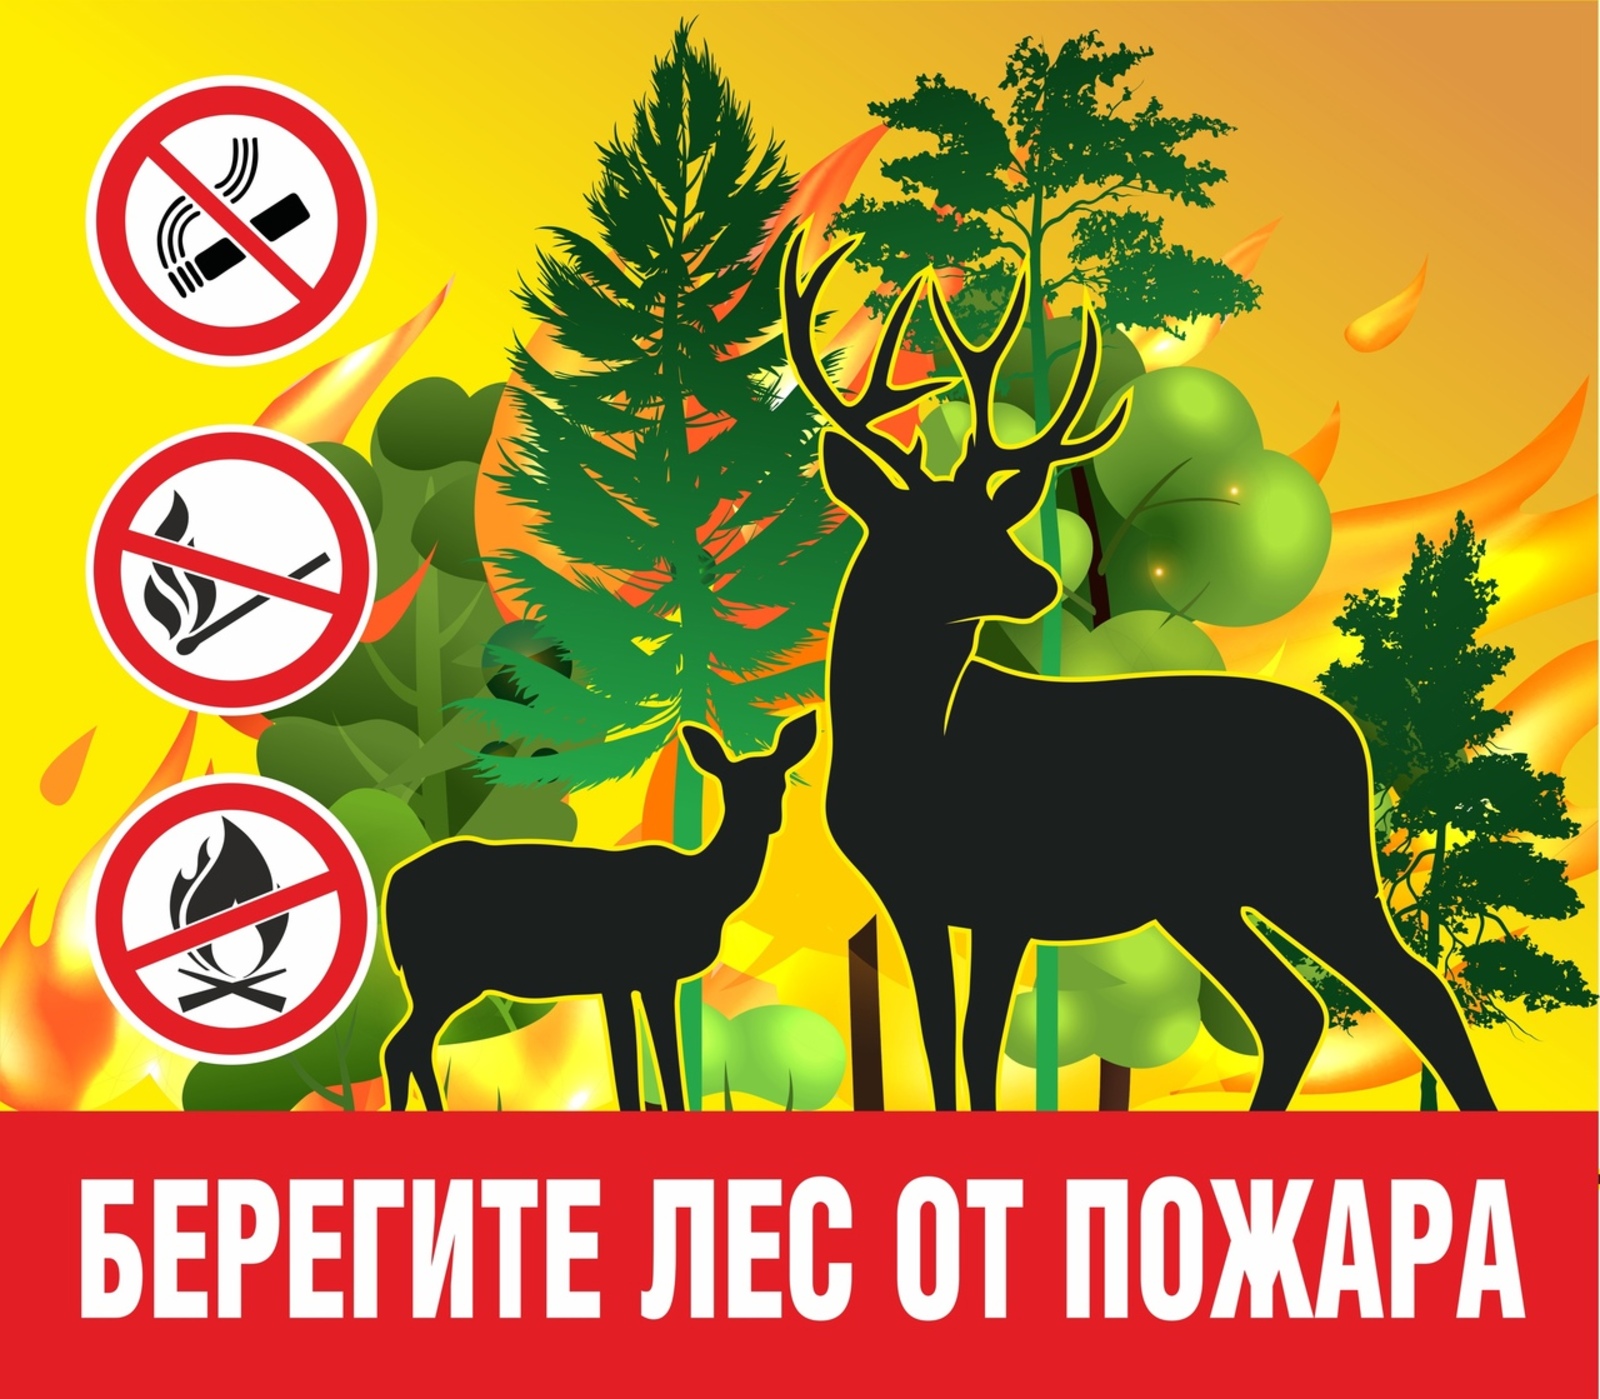 Псковская межрайонная природоохранная  прокуратура разъясняет правила пожарной безопасности в лесах.